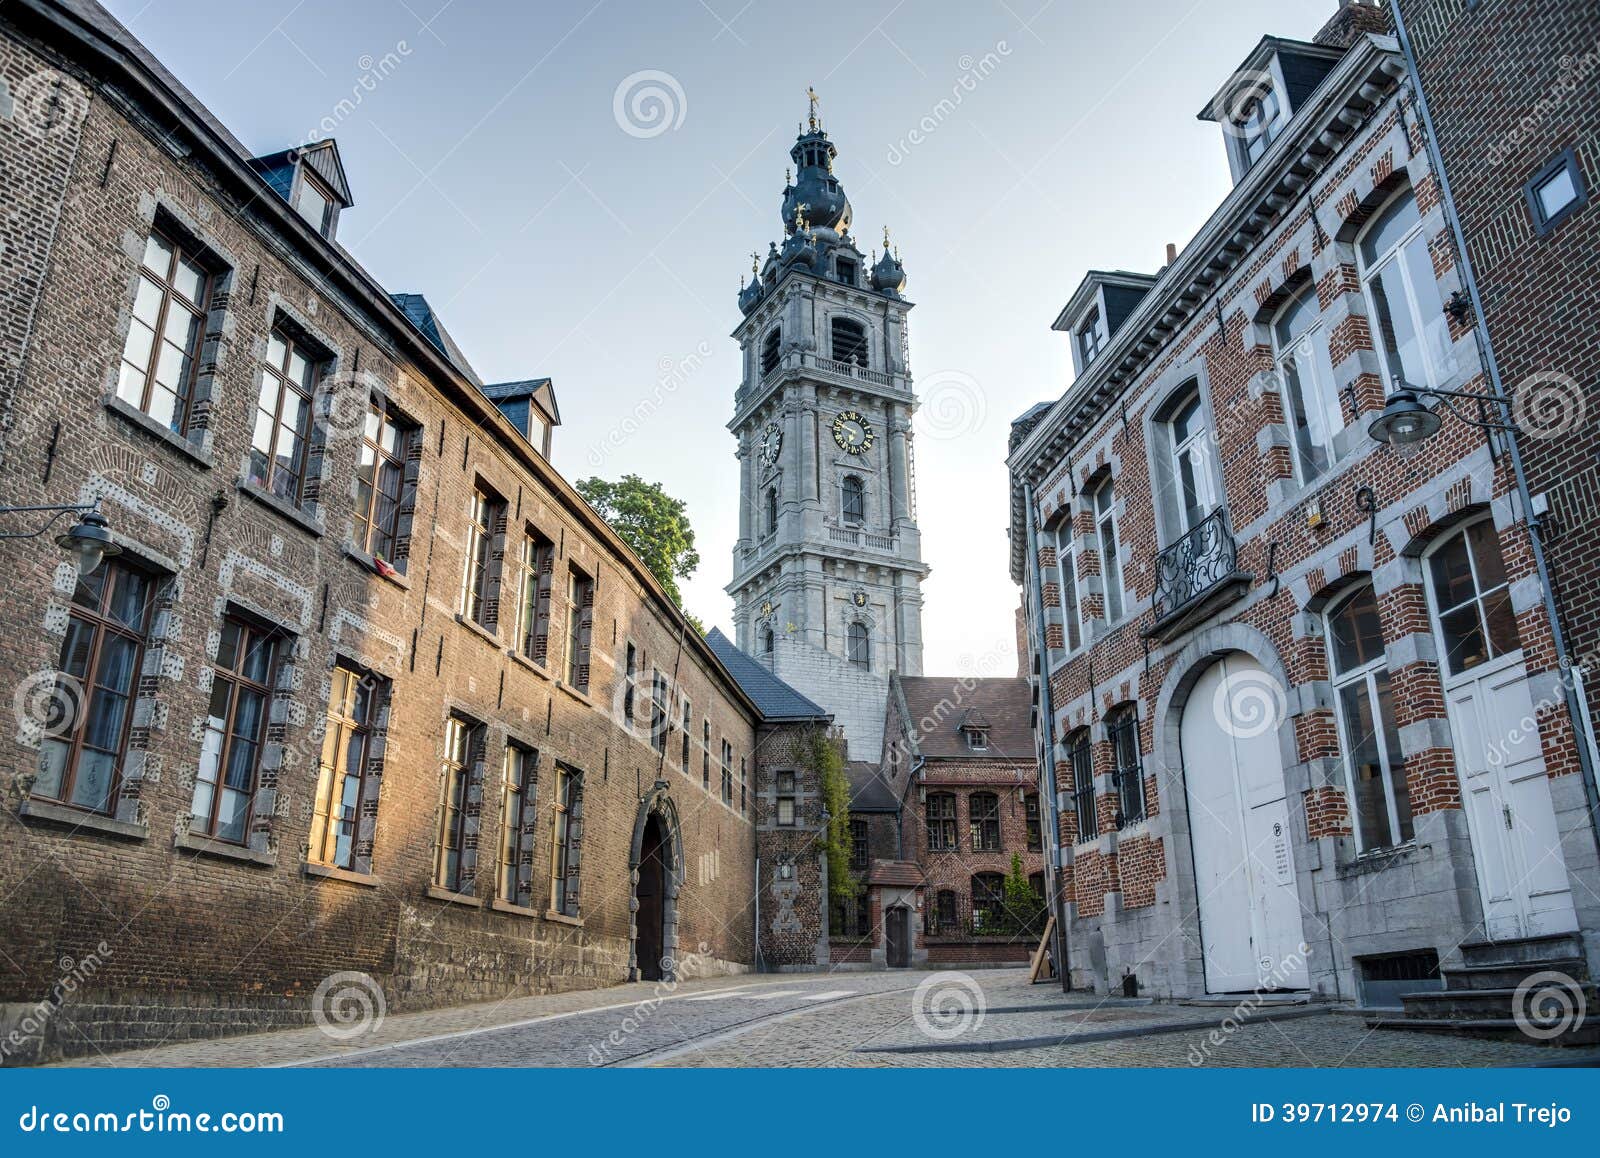 belfry of mons in belgium.